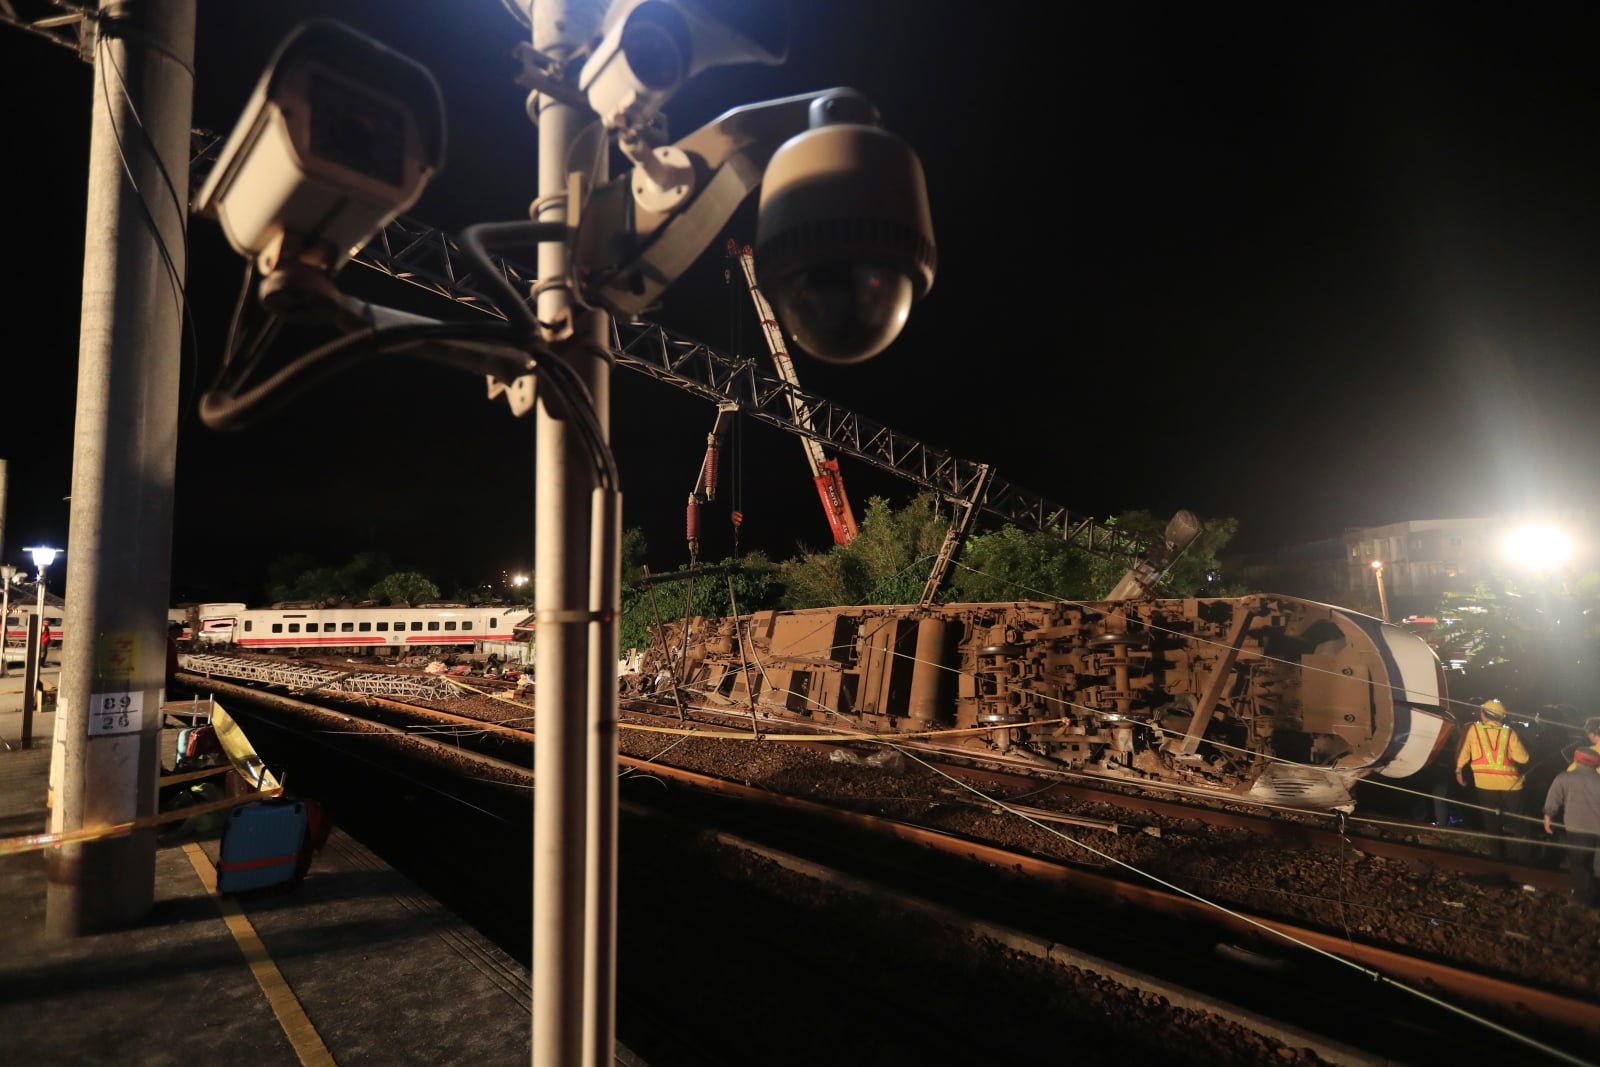 Katastrofa kolejowa na Tajwanie
EPA/RITCHIE B. TONGO 
